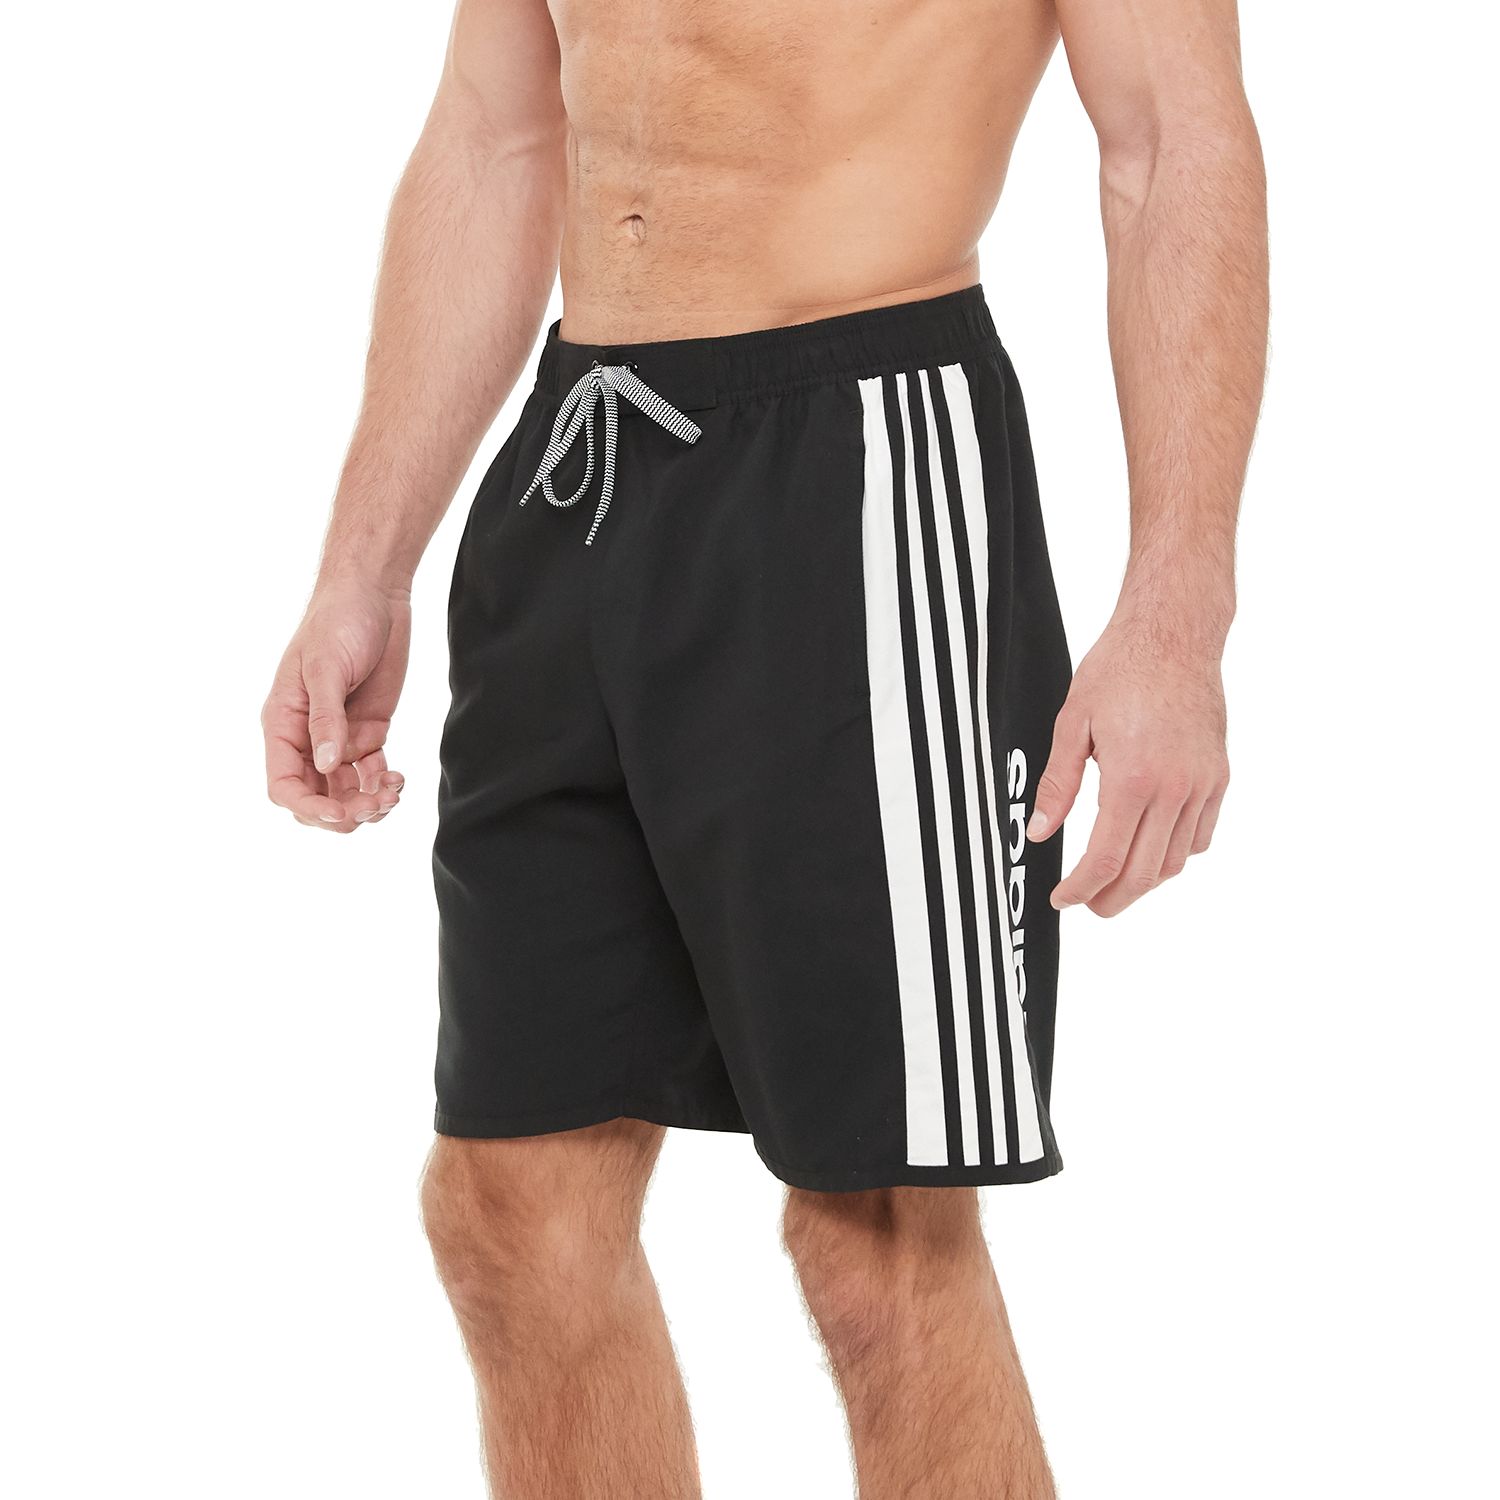 men's adidas swim shorts